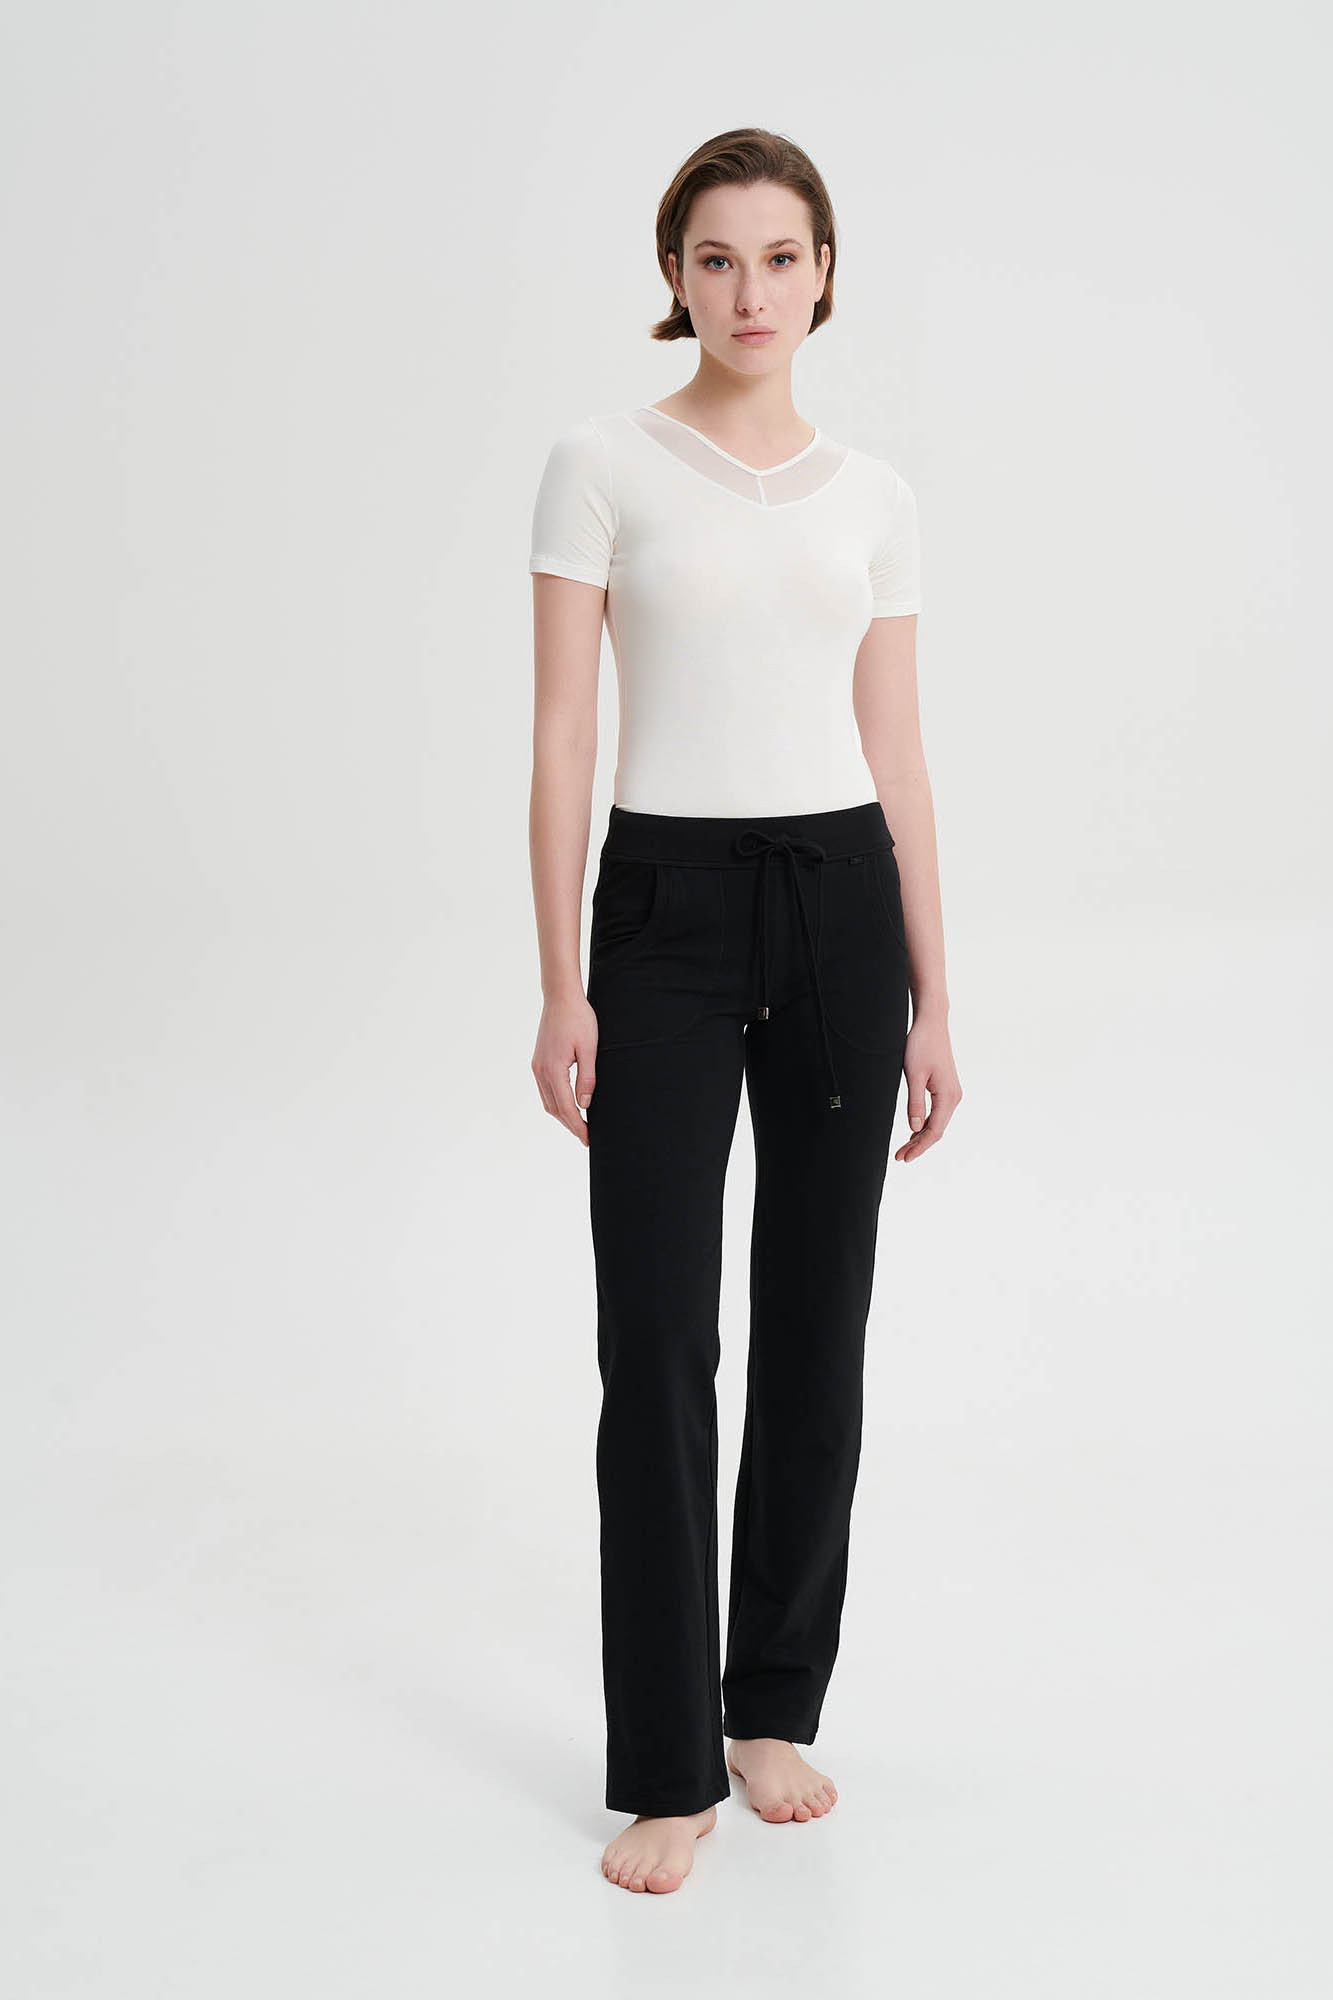 Vamp - Jednobarevné kalhoty s kapsami 19304 - Vamp black XL